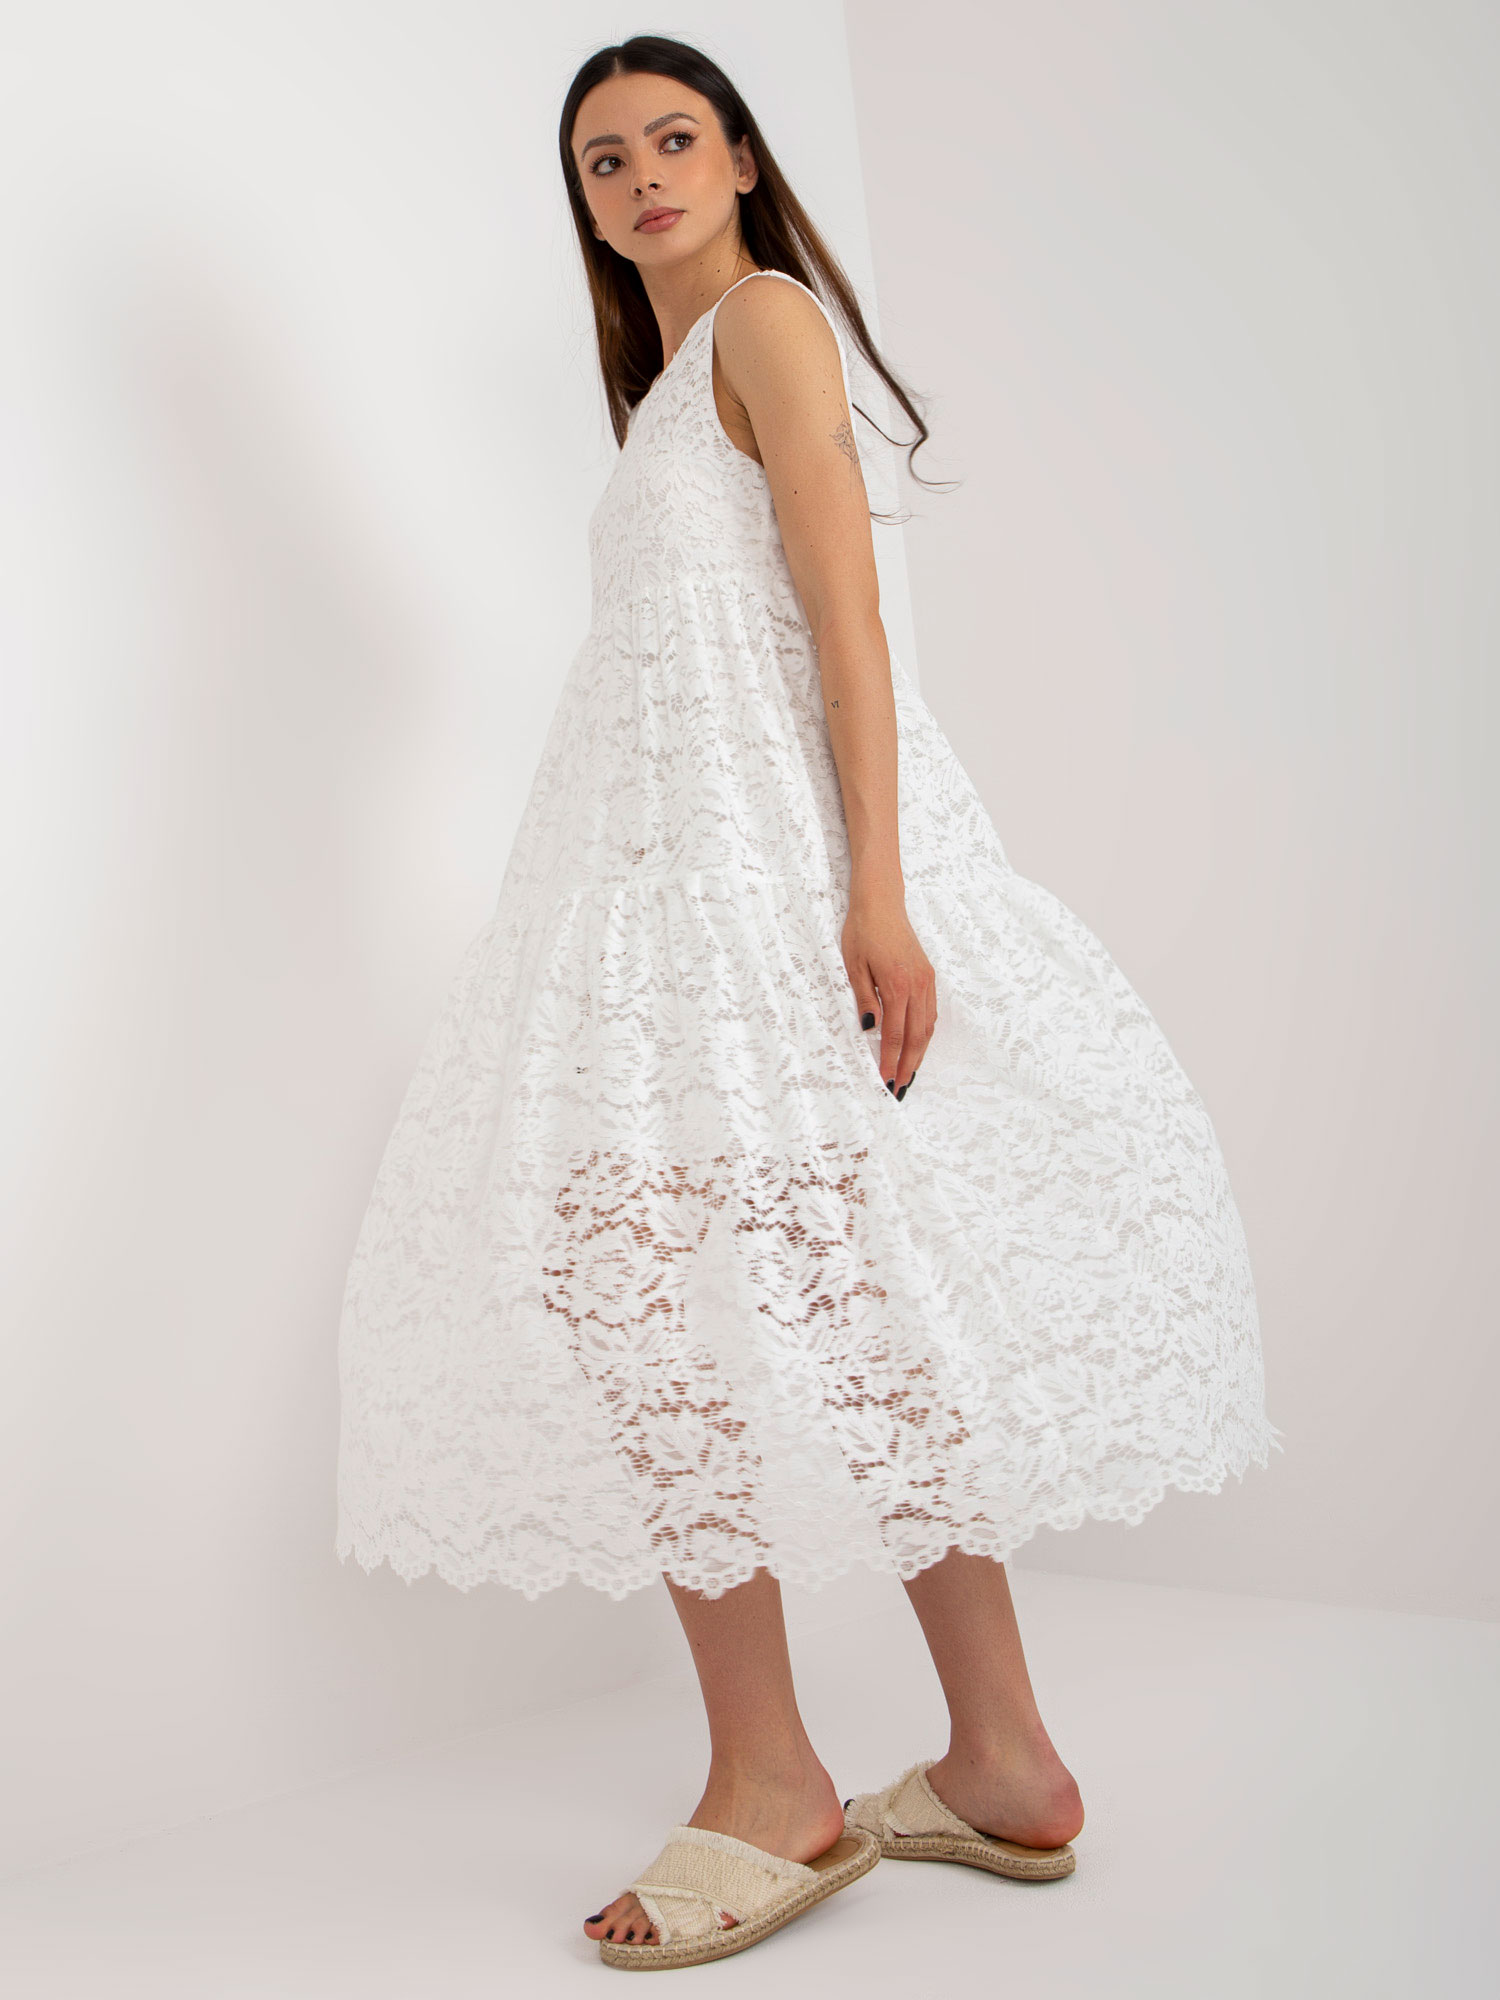 White flowing dress with ruffle OCH BELLA